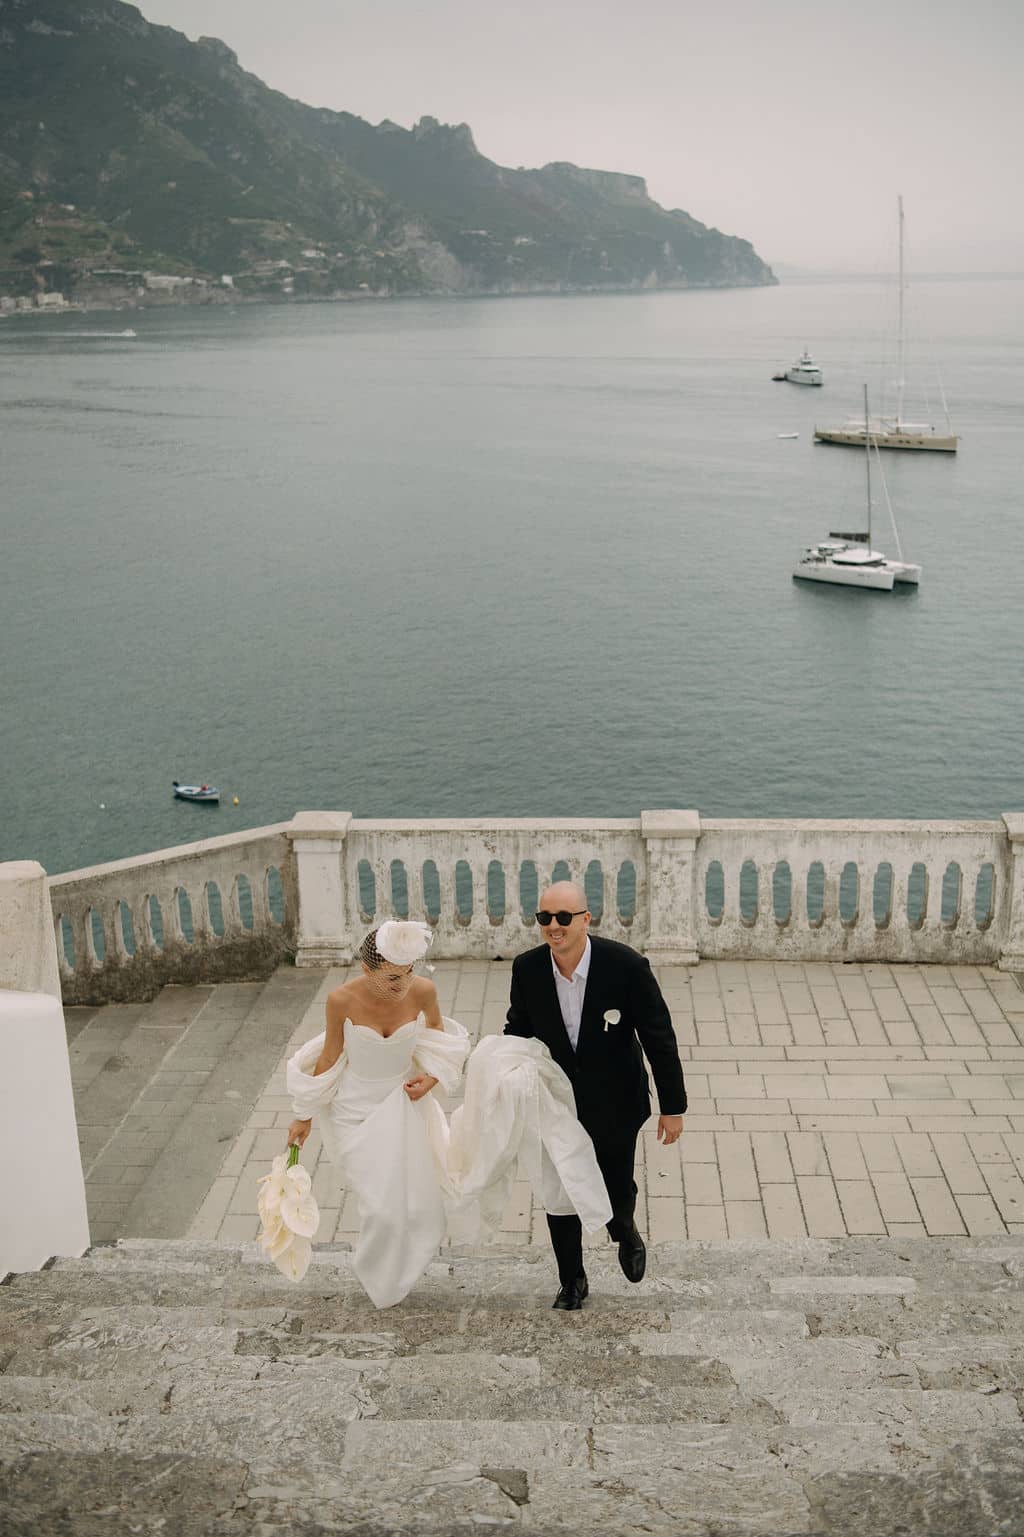 Vilma Wedding & Event Planner _ Vilma Rapšaitė _ vestuvių planavimas organizavimas koordinavimas Italijoje _ Atrani _ Amalfio pakrantė (2)